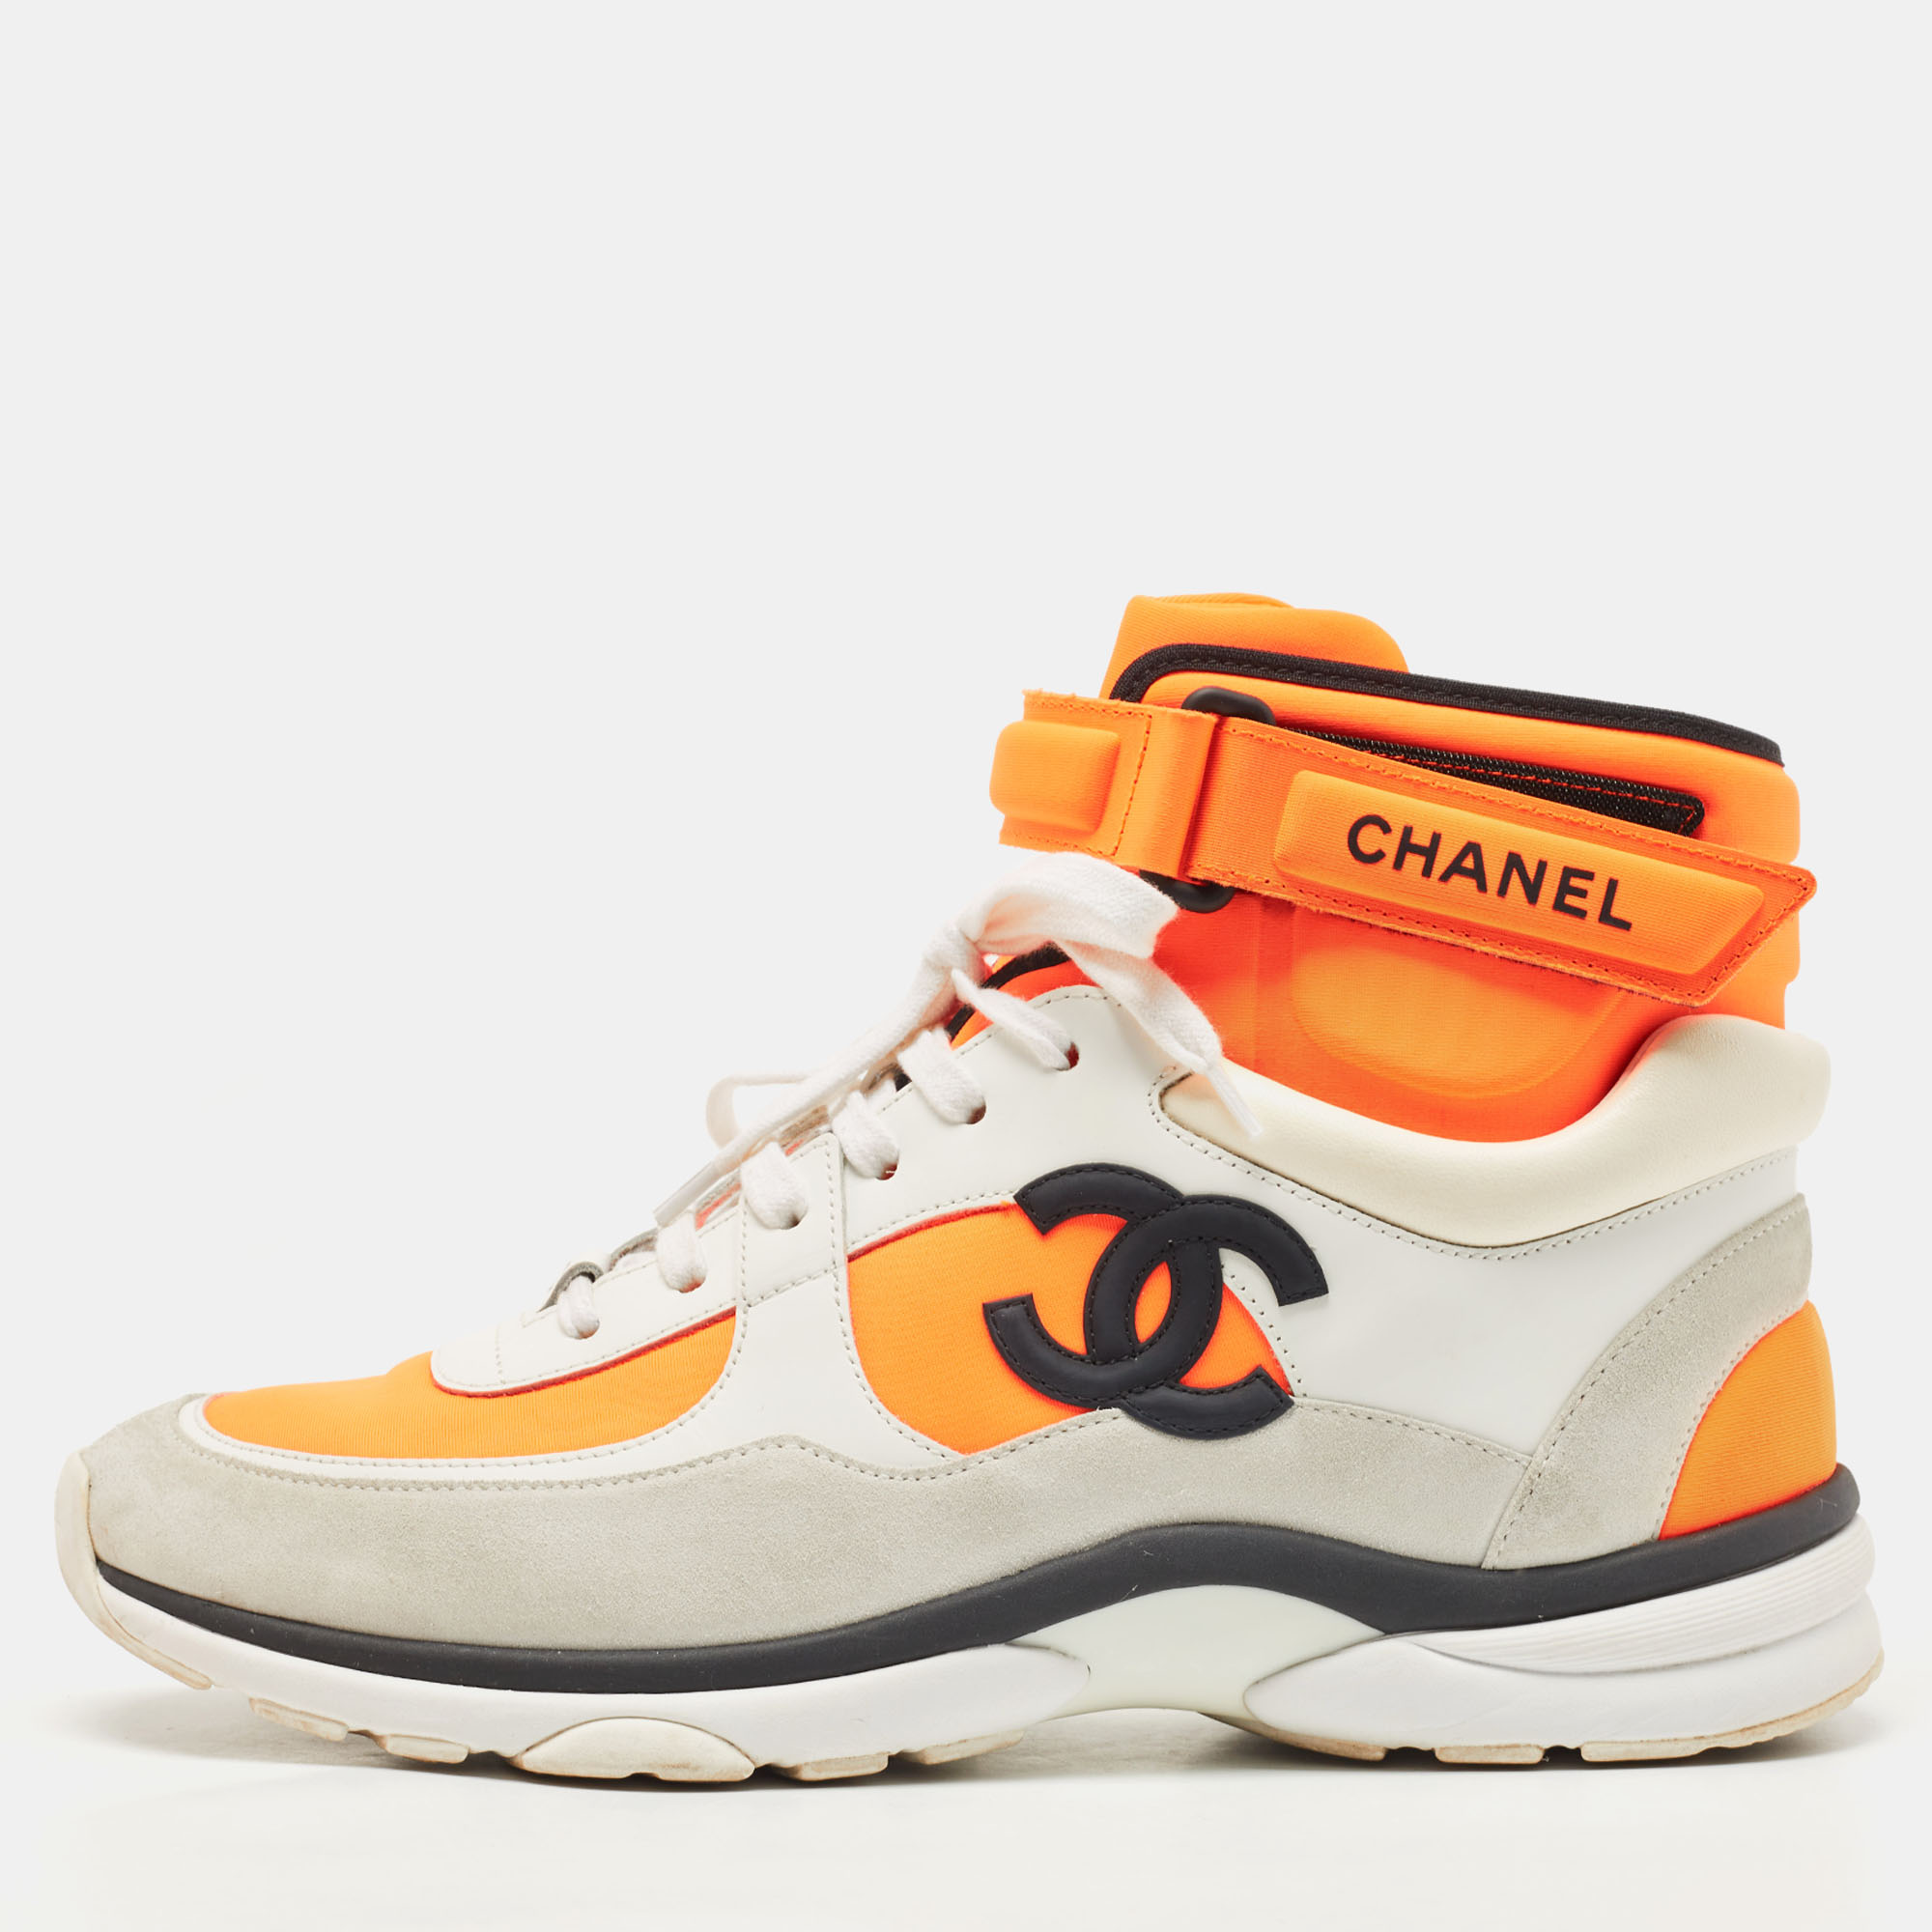 Chanel Sneakers Shoes Mens EU 44  US Size 11 pvc  eBay